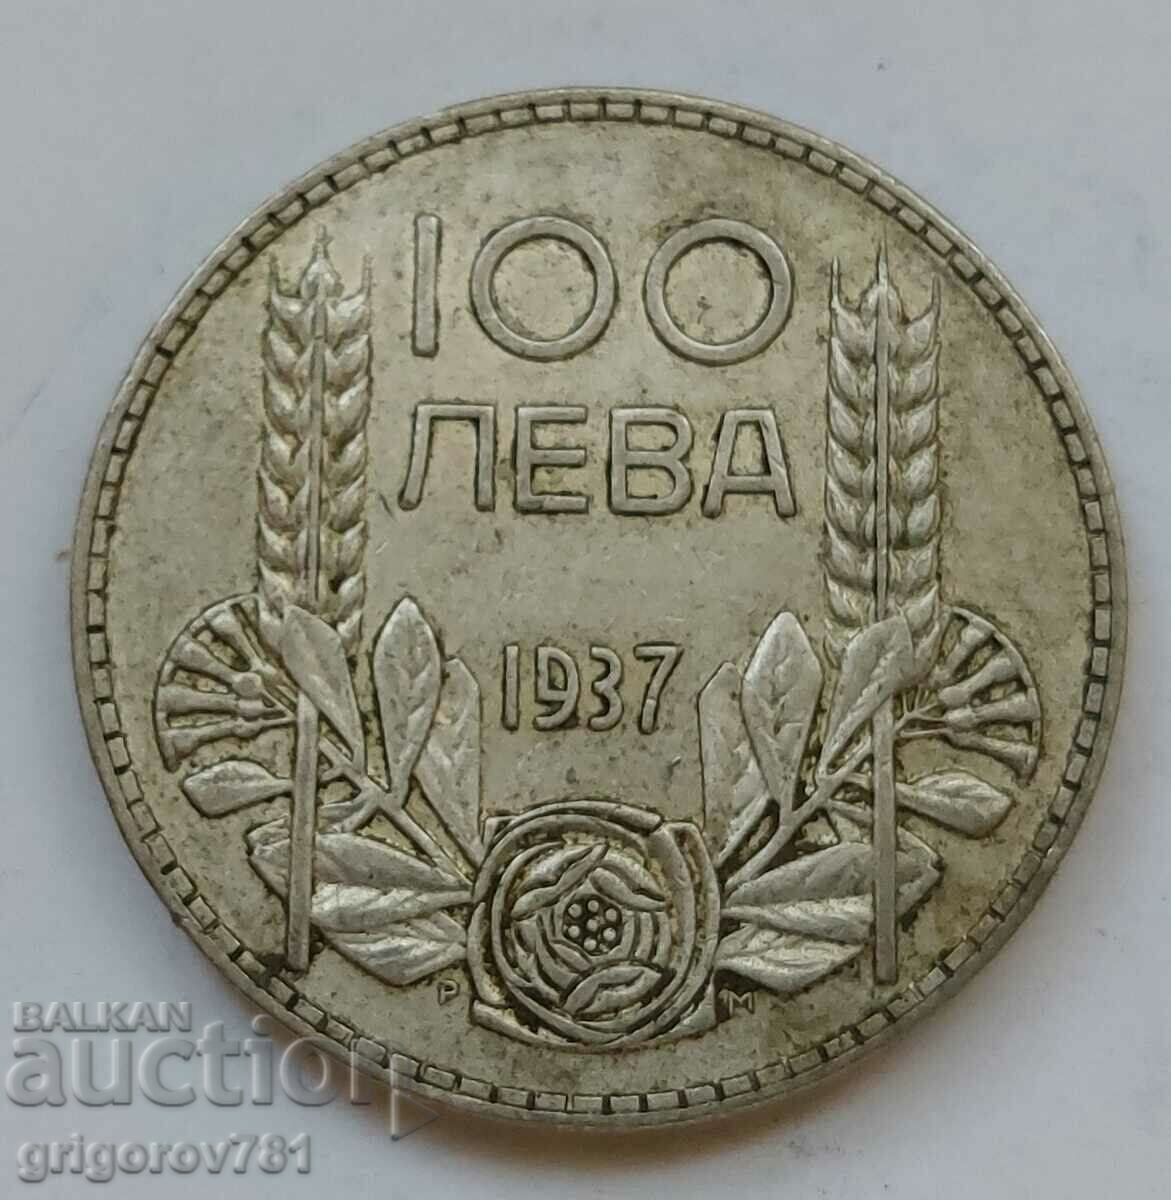 Ασήμι 100 λέβα Βουλγαρία 1937 - ασημένιο νόμισμα #136